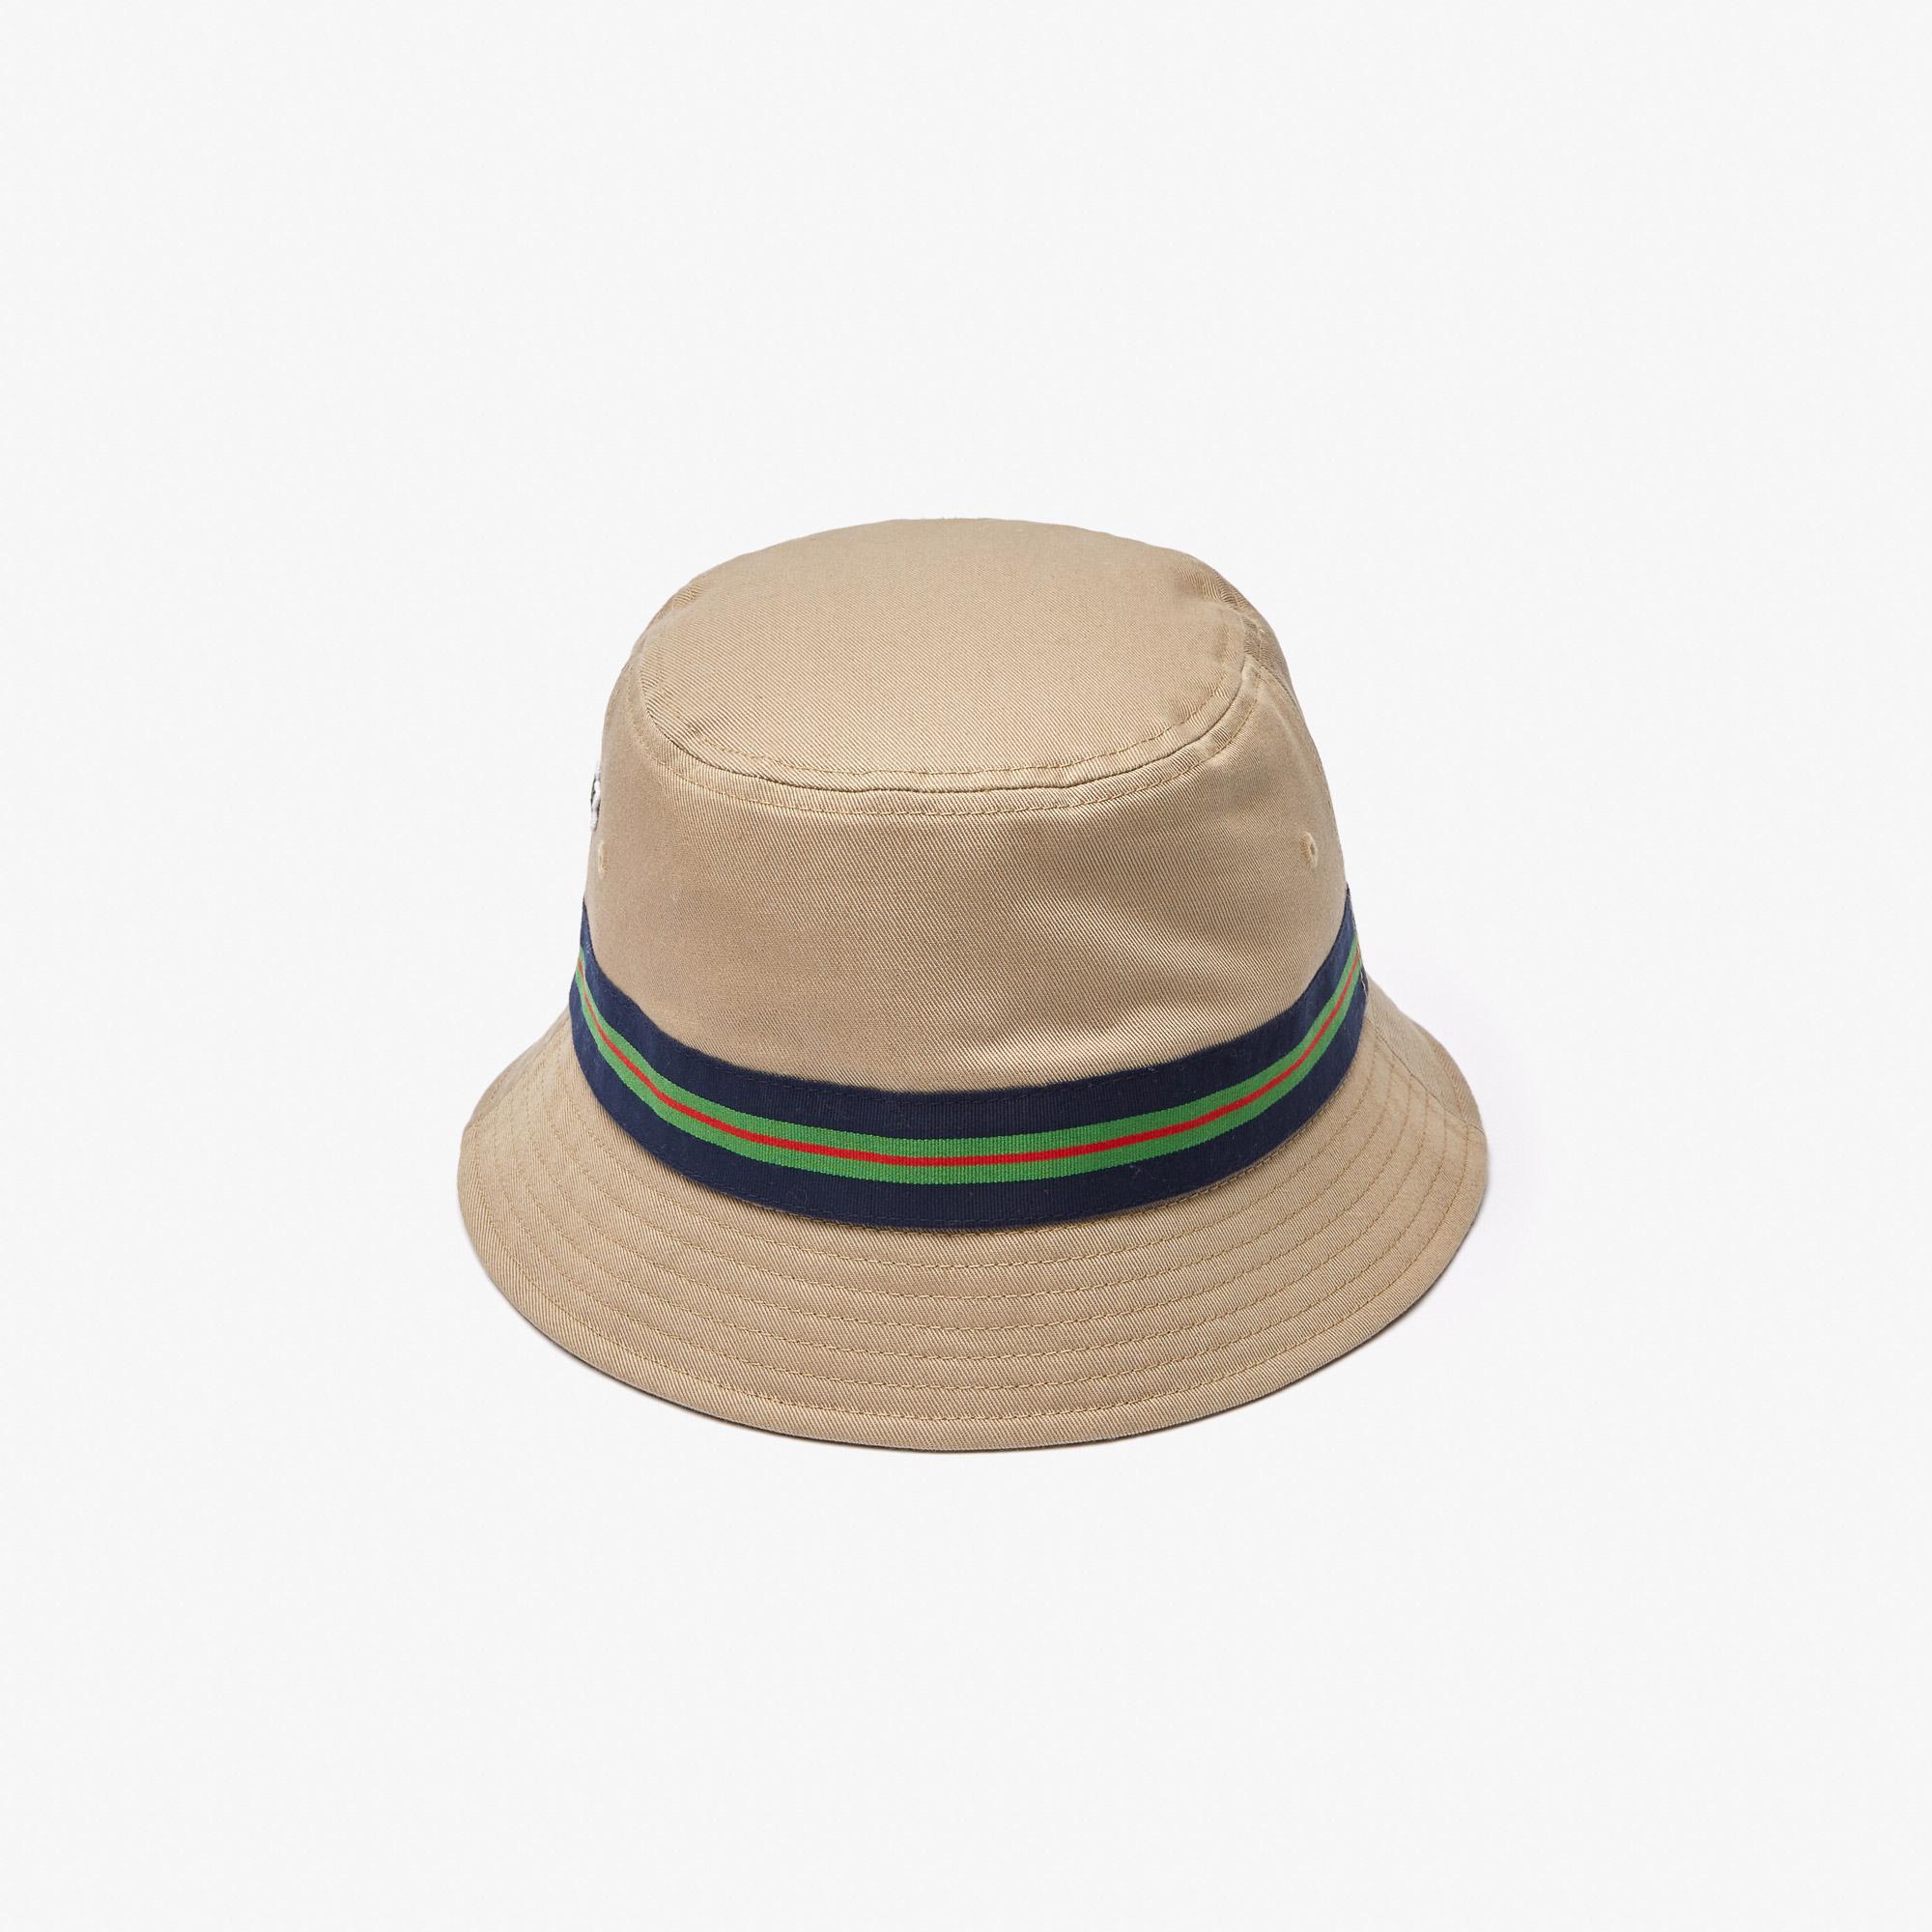 Lacoste kapelusz typu bucket hat unisex z bawełny organicznej z paskiem w prążki